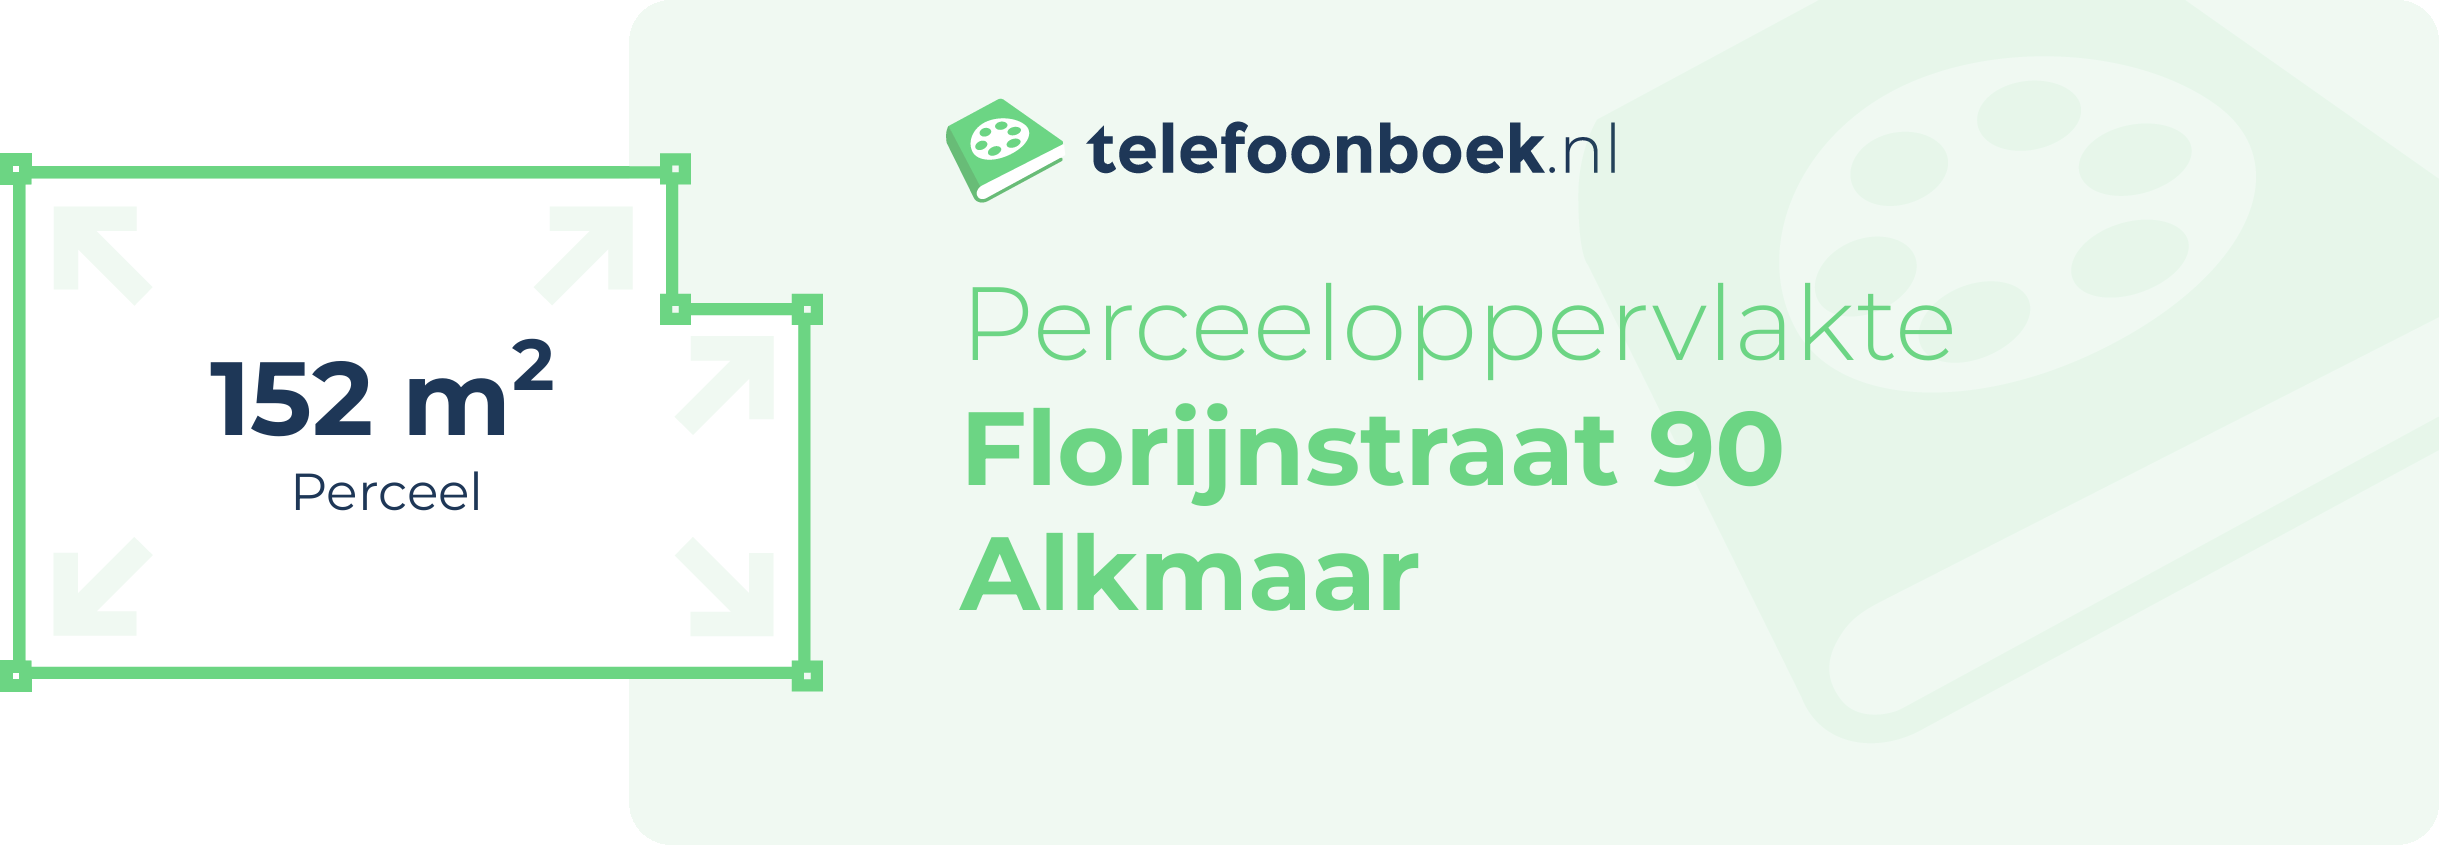 Perceeloppervlakte Florijnstraat 90 Alkmaar